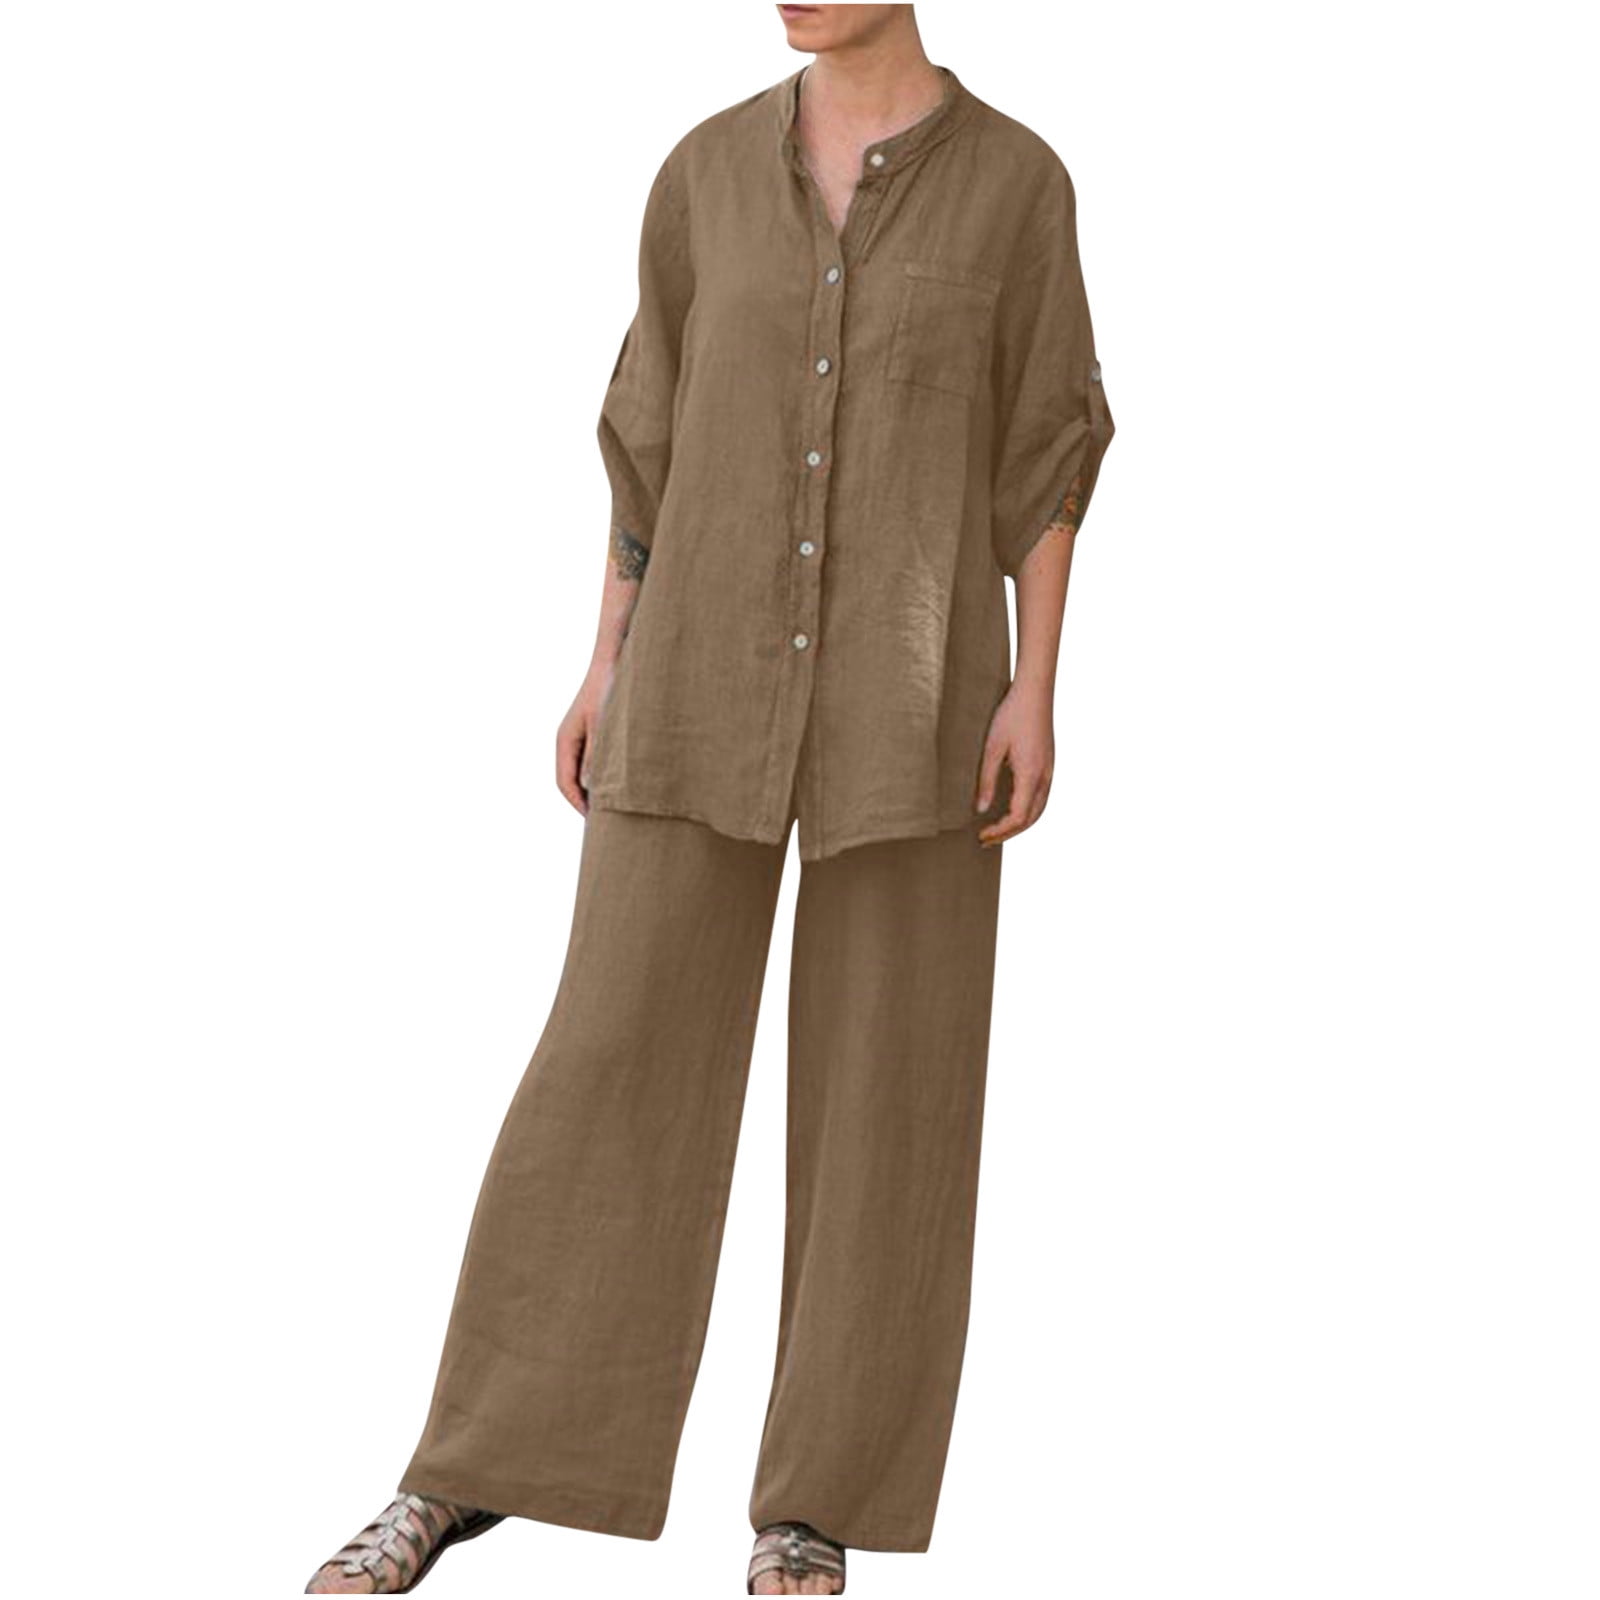 Plus Size Summer Outfits for Women Cotton Linen Pants Set 2 Piece